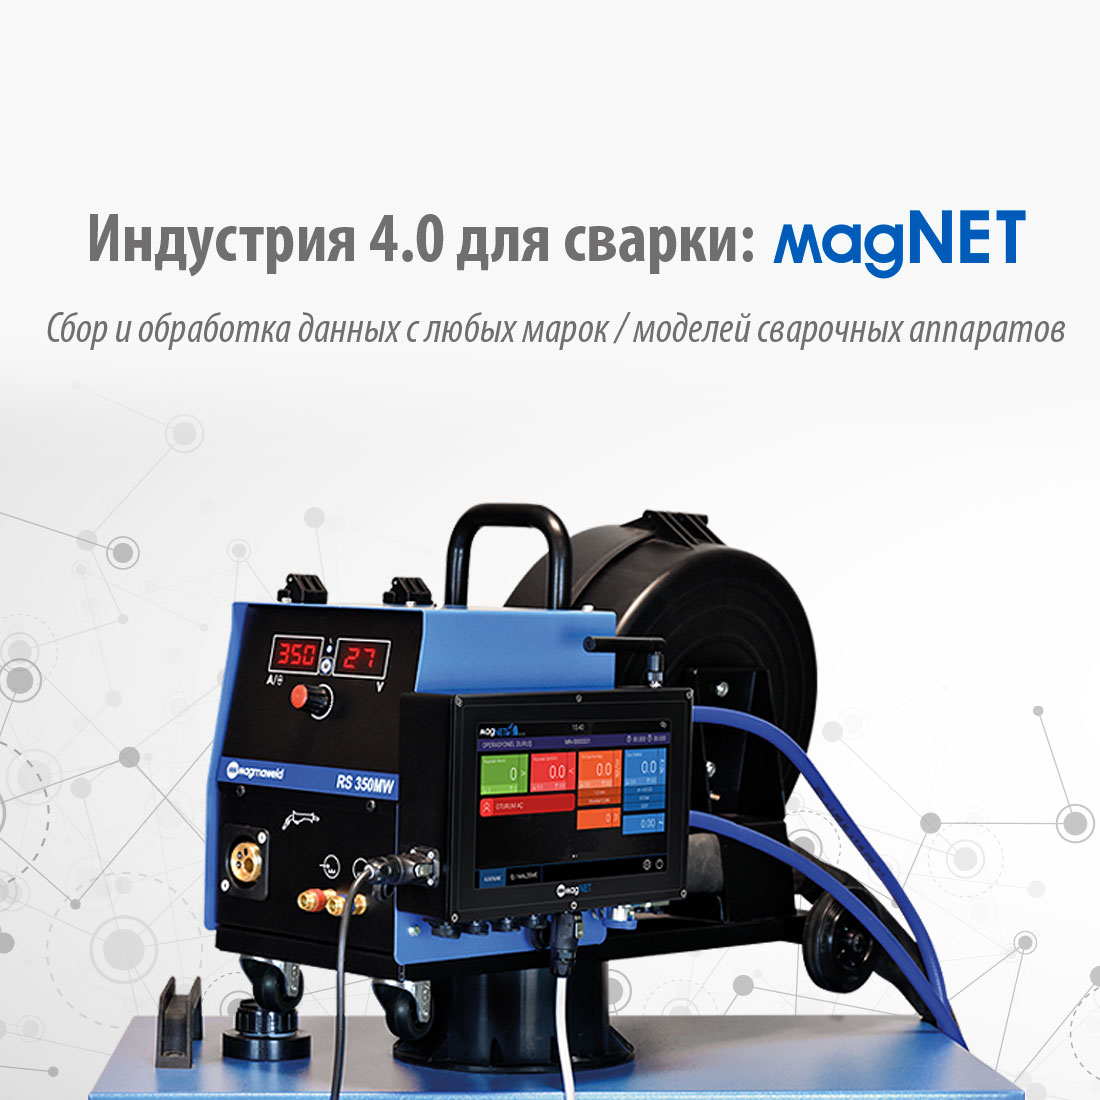 Индустрия 4.0 для сварки: magNET